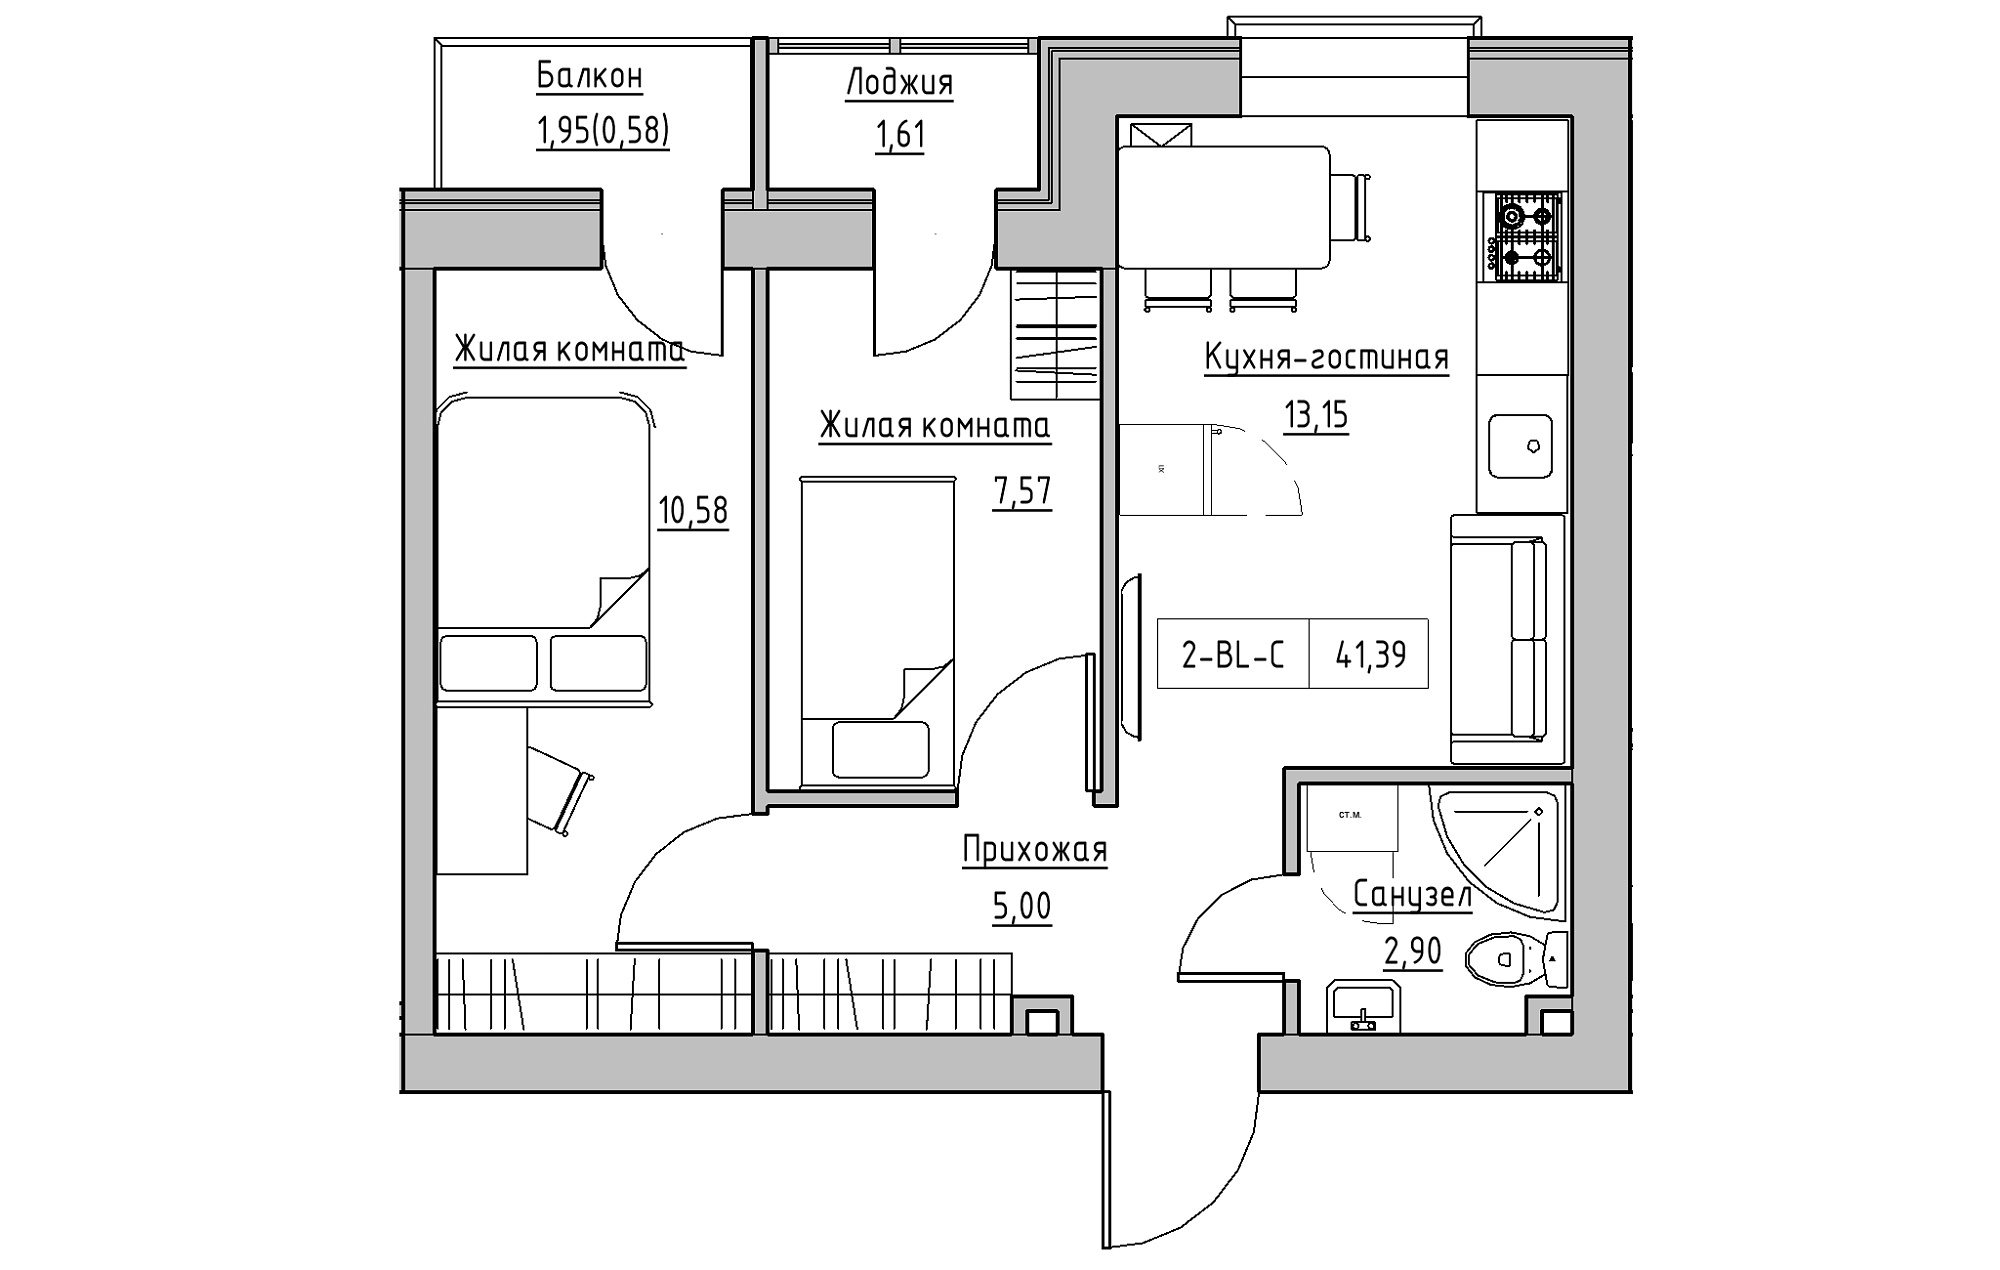 Планировка 2-к квартира площей 41.39м2, KS-018-04/0005.